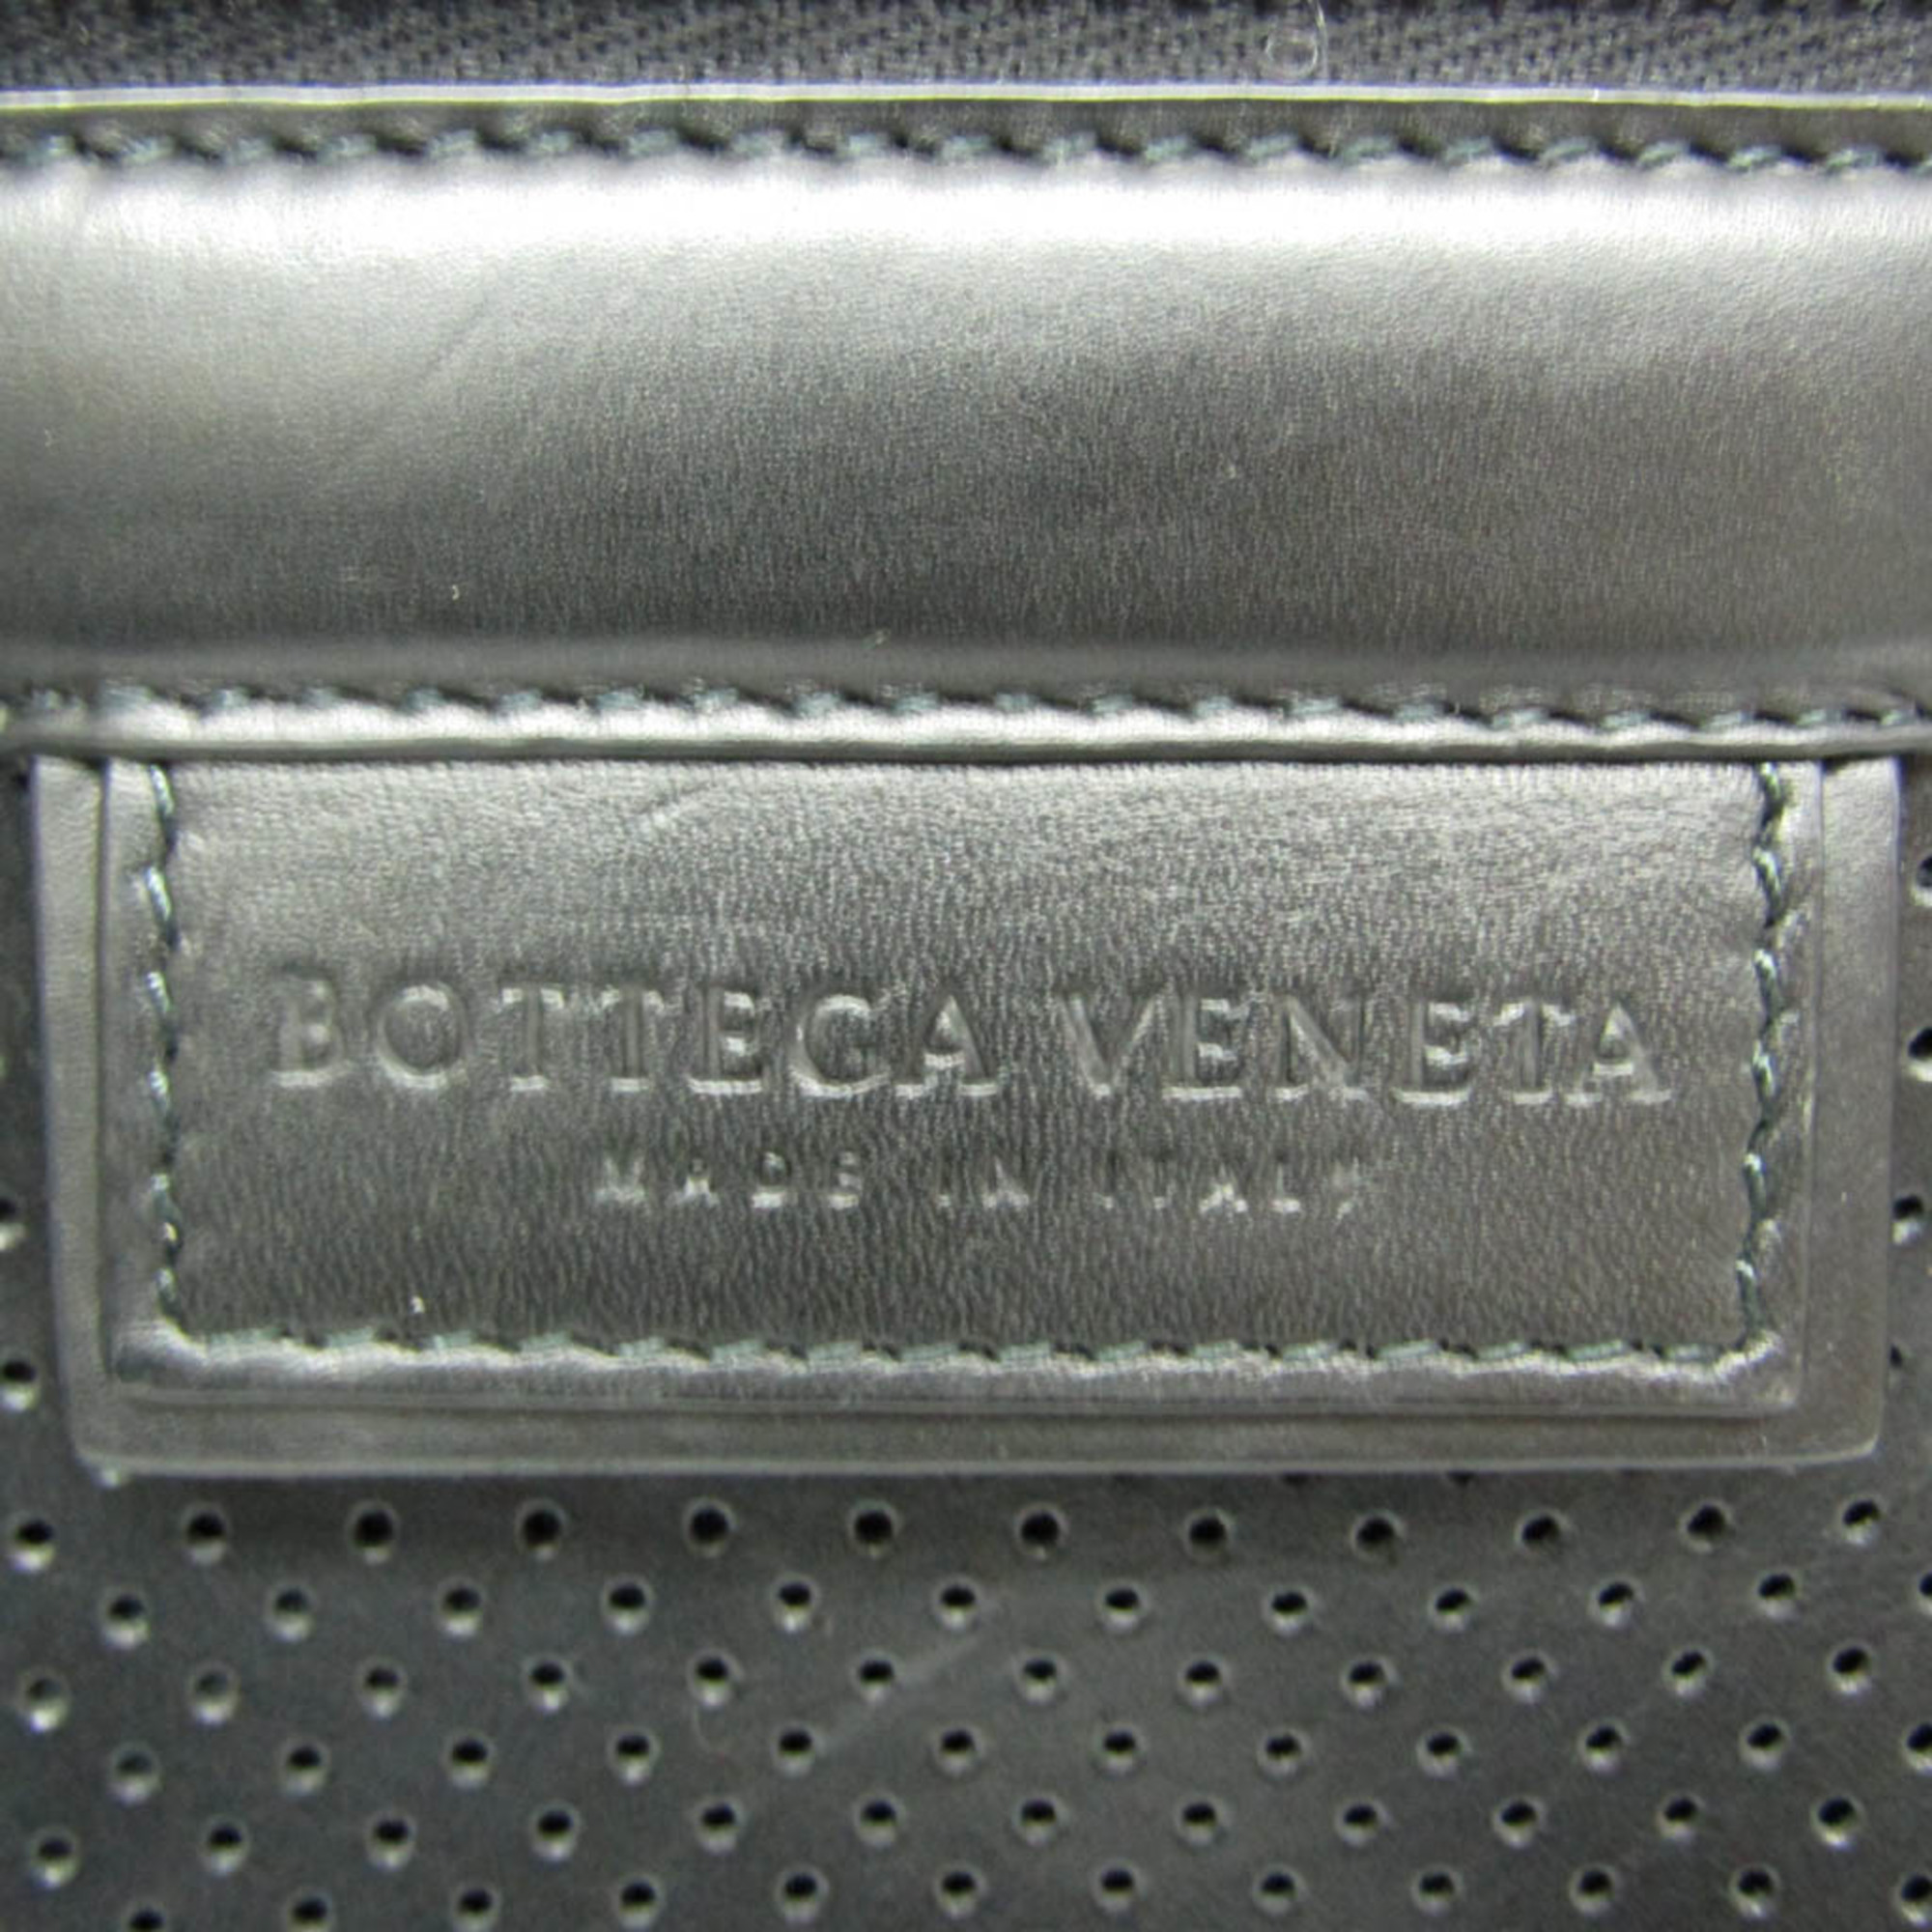 Bottega Veneta Leggero Men's Leather Clutch Bag Black